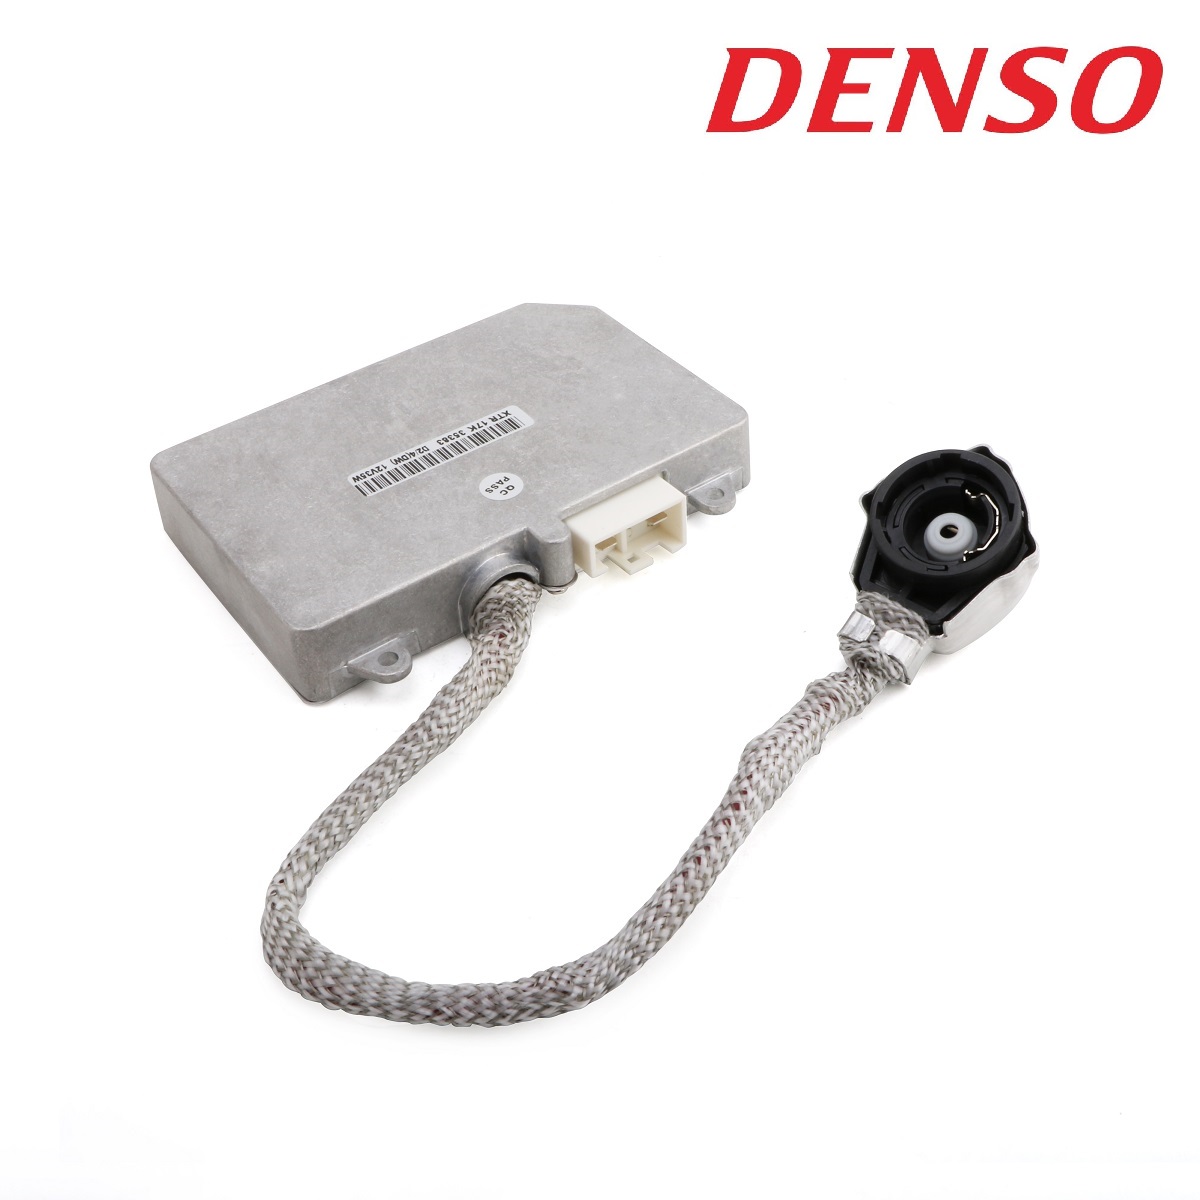 Balast Xenon OEM Compatibil Denso/Koito DDLT002  / 031100-0092 / 85967-50020